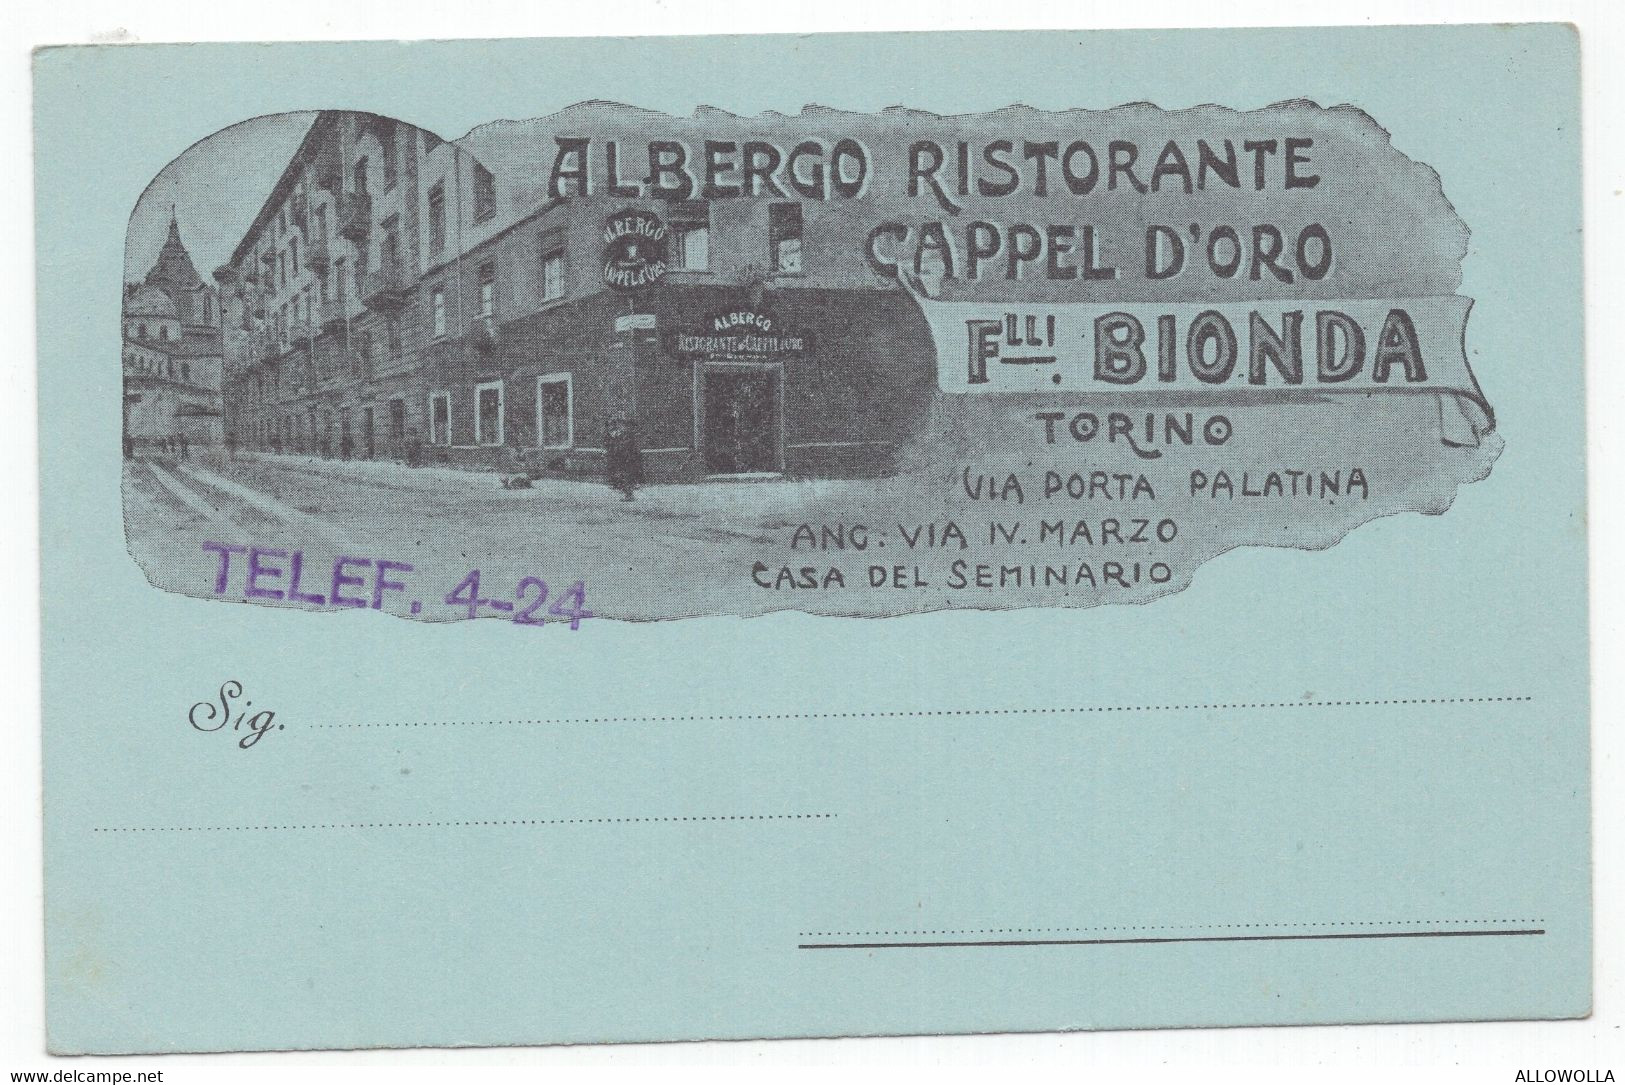 18507 " ALBERGO RISTORANTE CAPPEL D'ORO-F.LLI BIONDA-TORINO "VERA FOTO-CART. POST. NON SPED. - Bares, Hoteles Y Restaurantes